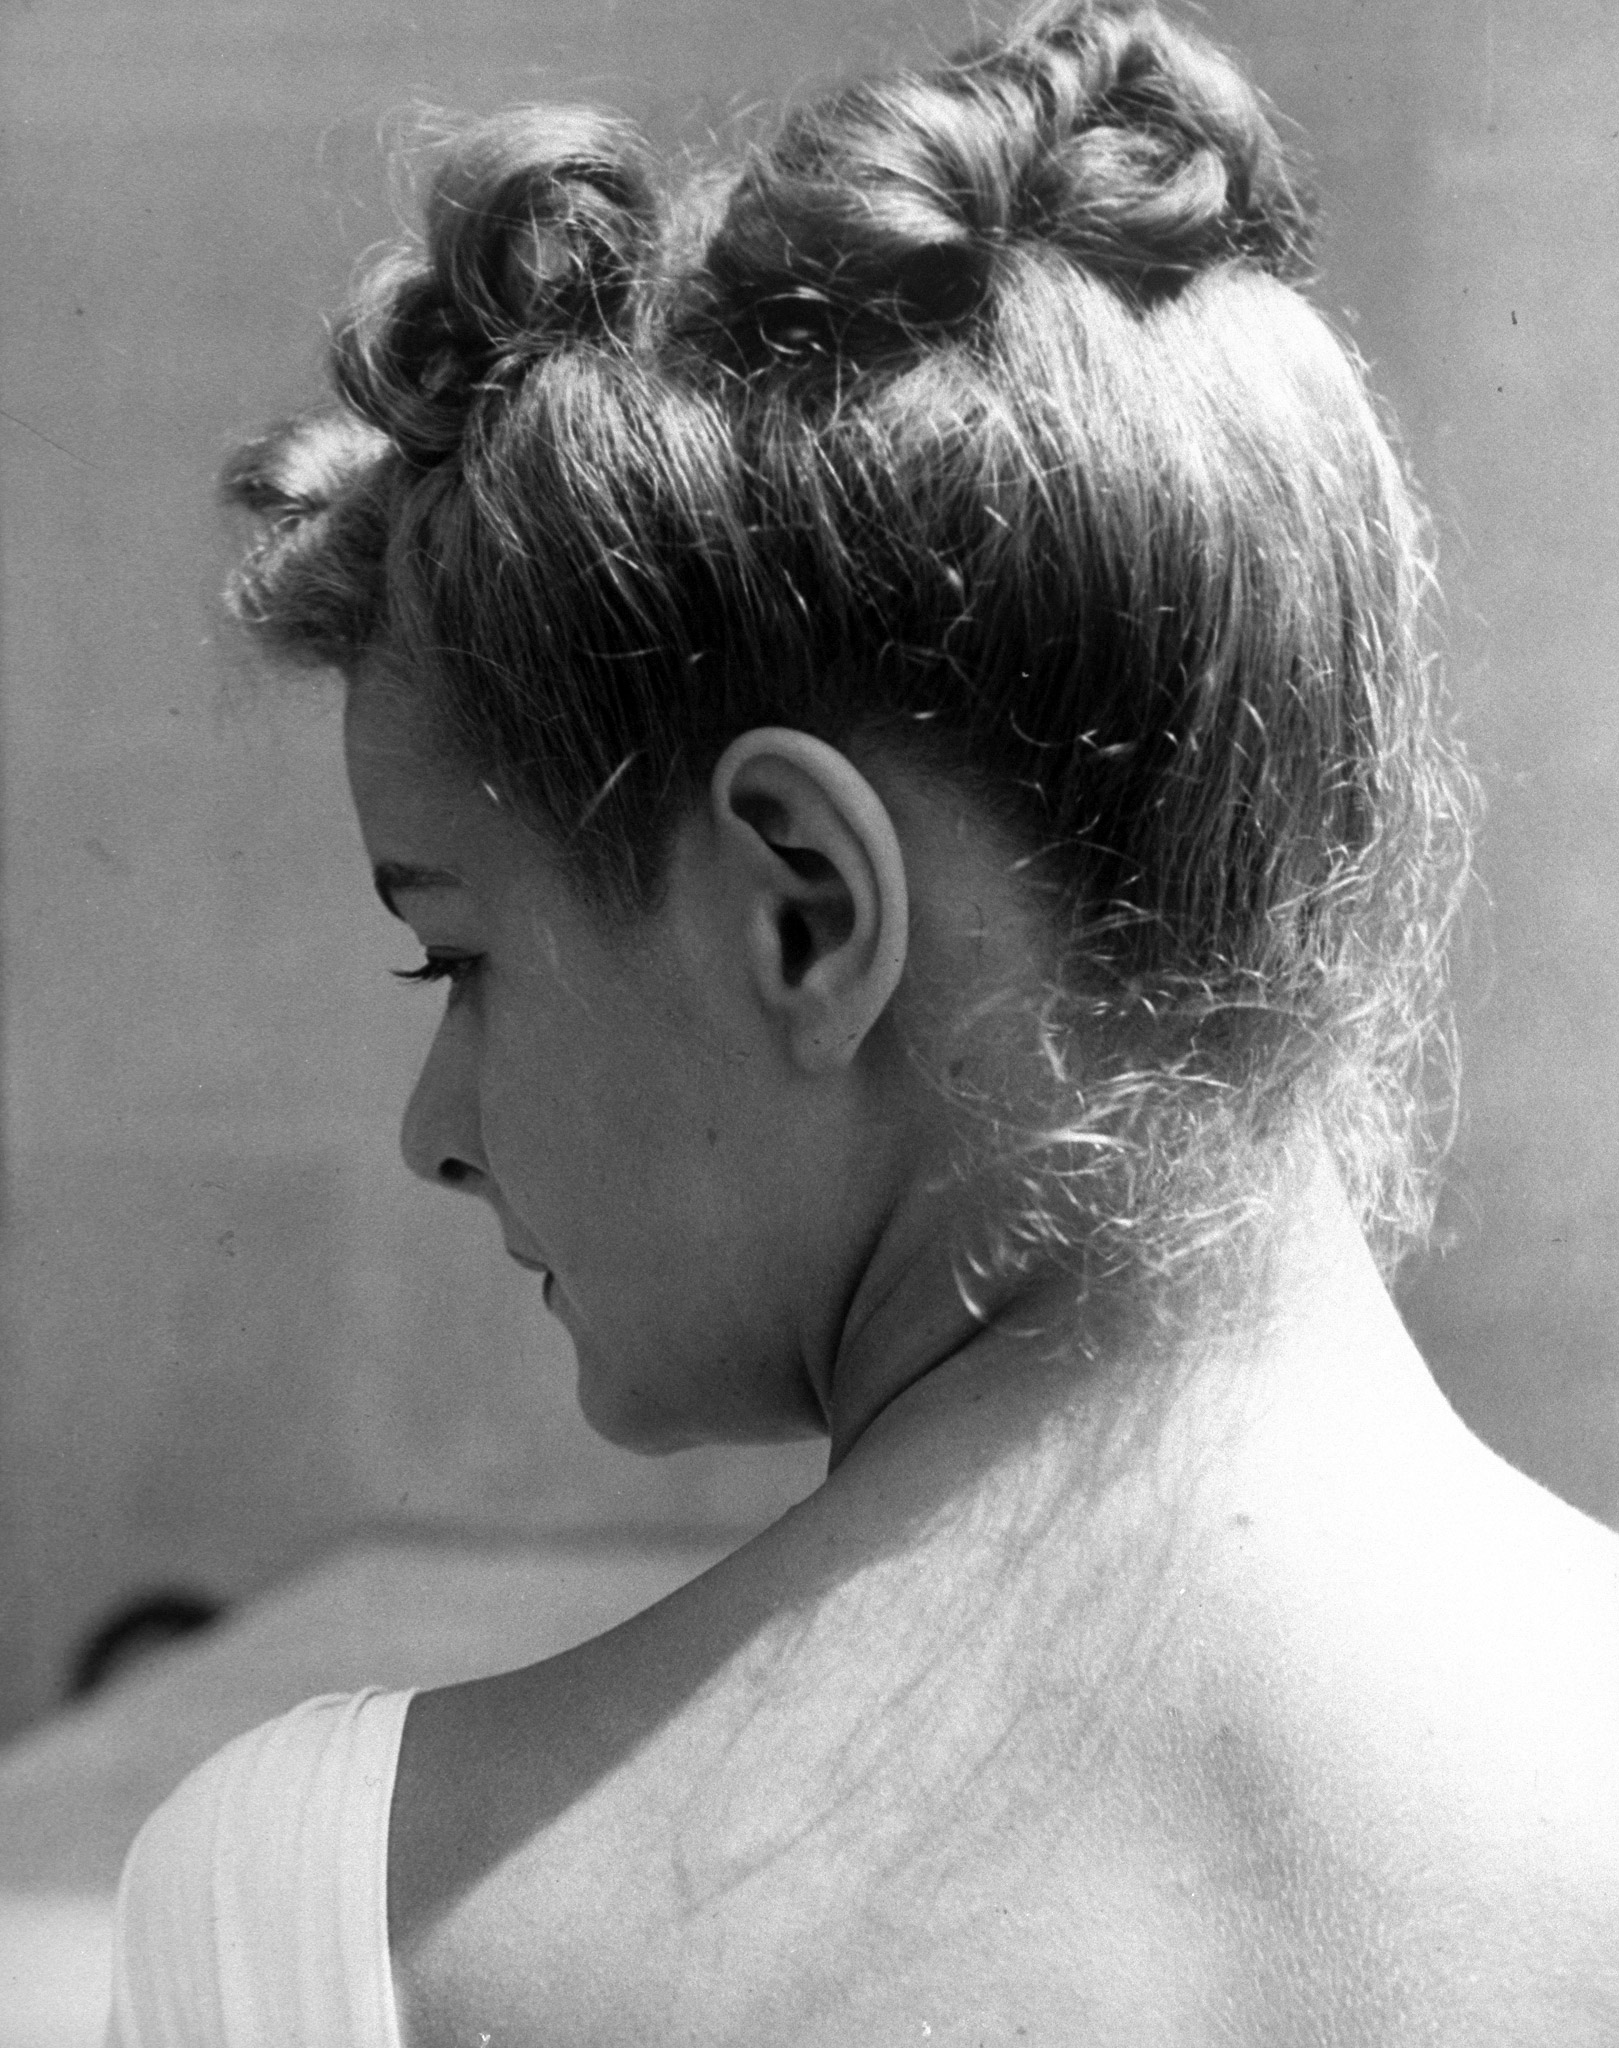 Detail of model June Cox's hair.